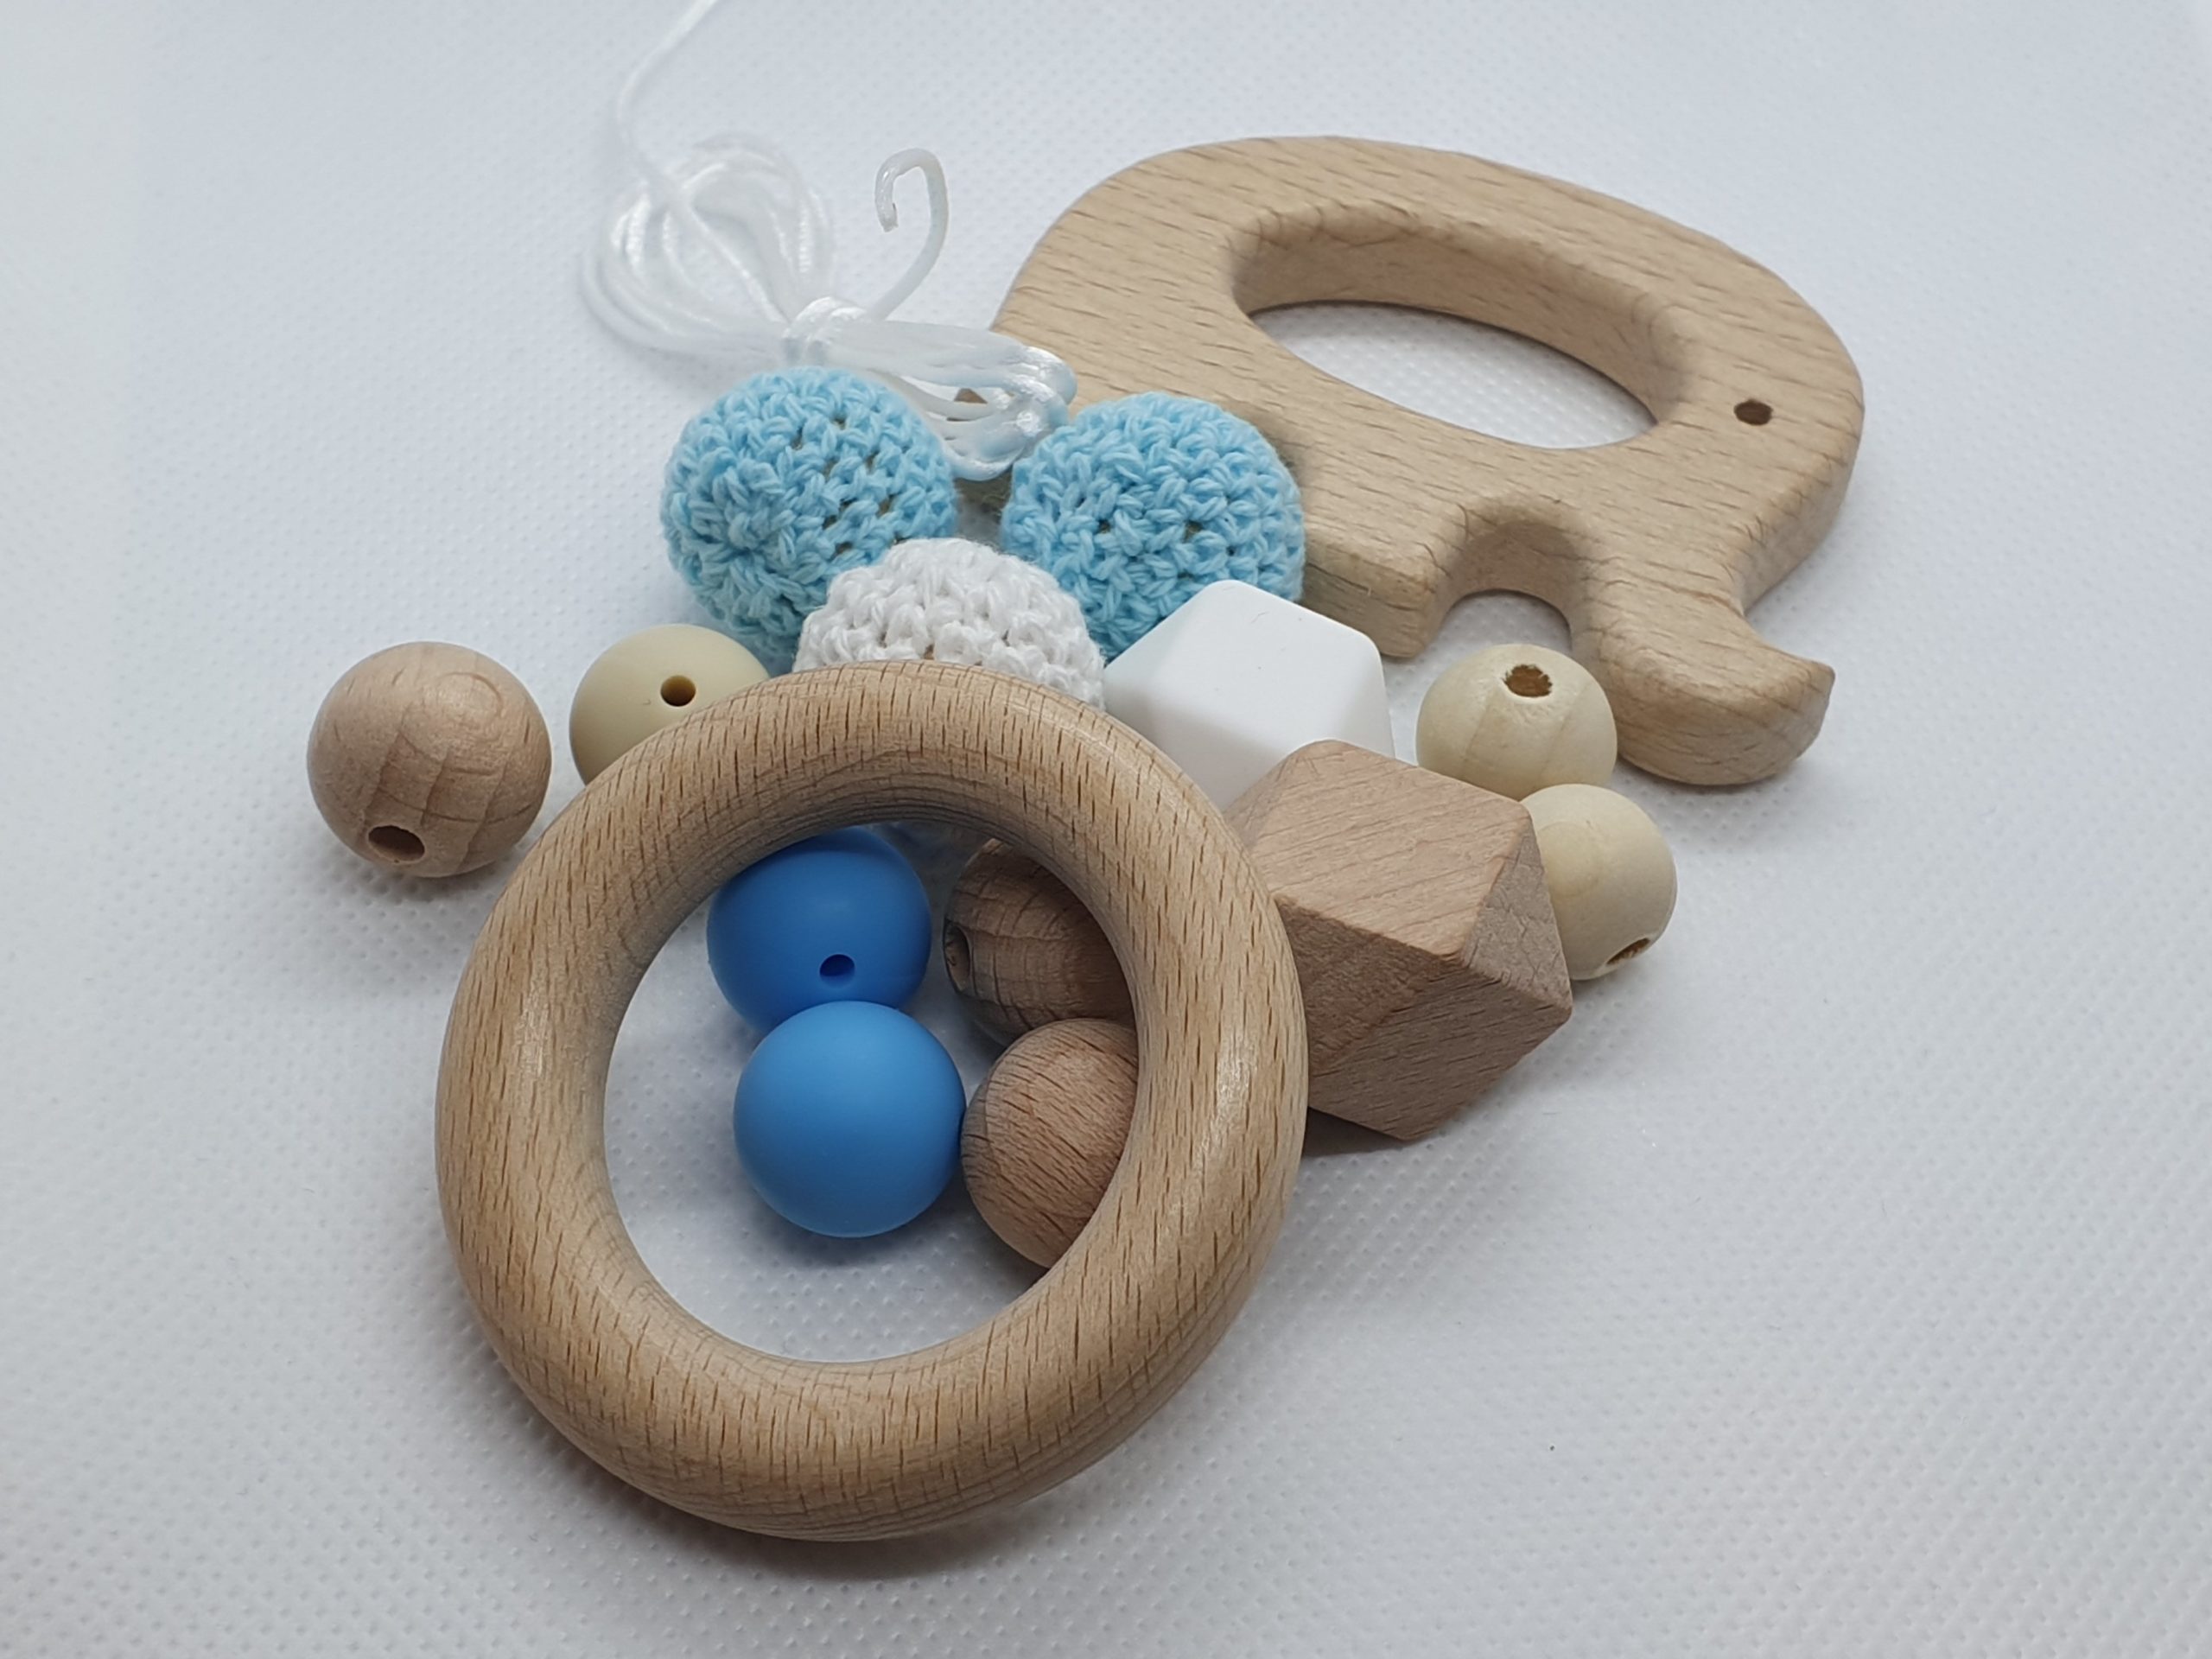 Maak je eigen – Wood & Fun baby DIY – zelf bijtring maken - Set 1 olifant